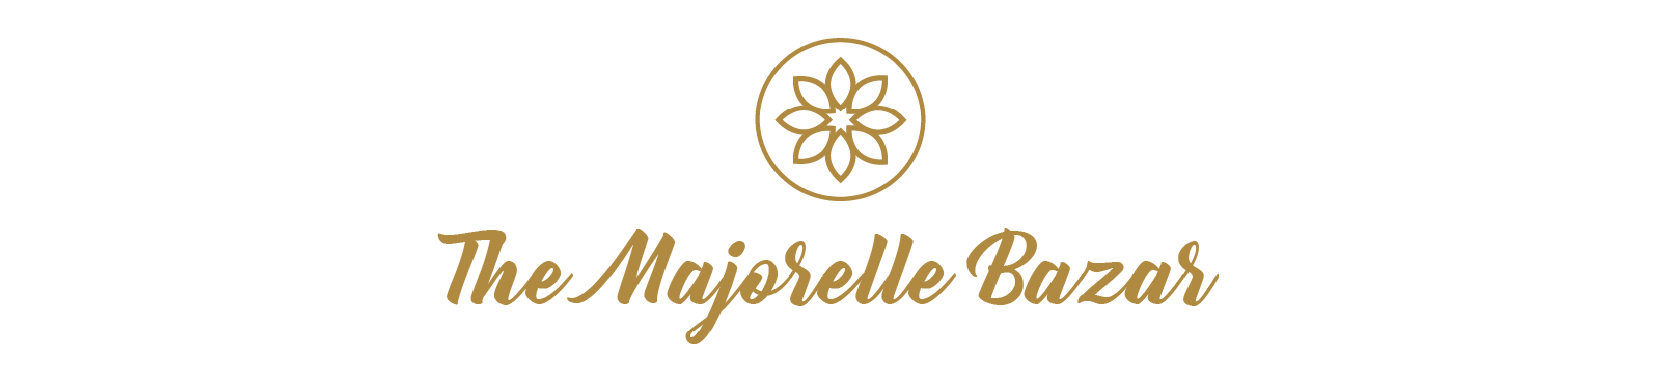 logo The Majorelle Bazar